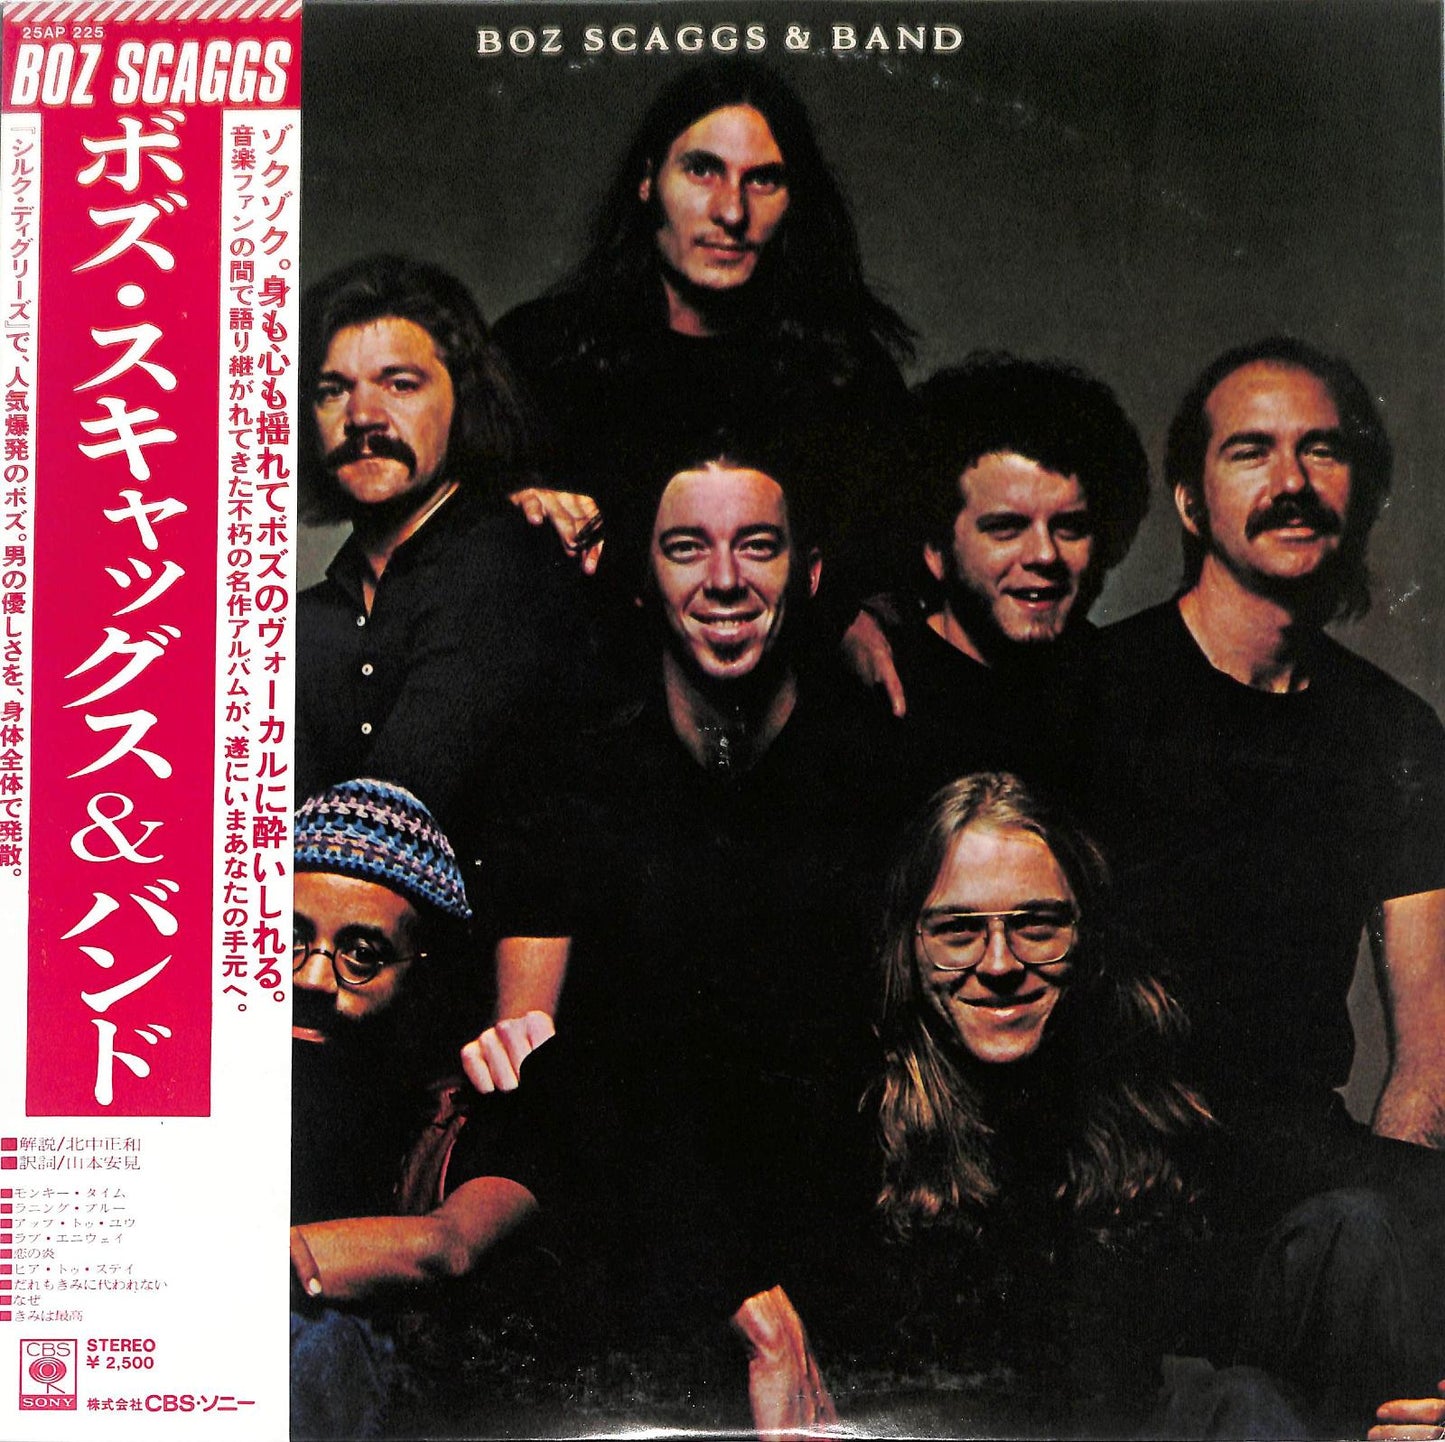 Boz Scaggs - Boz Scaggs & Band 